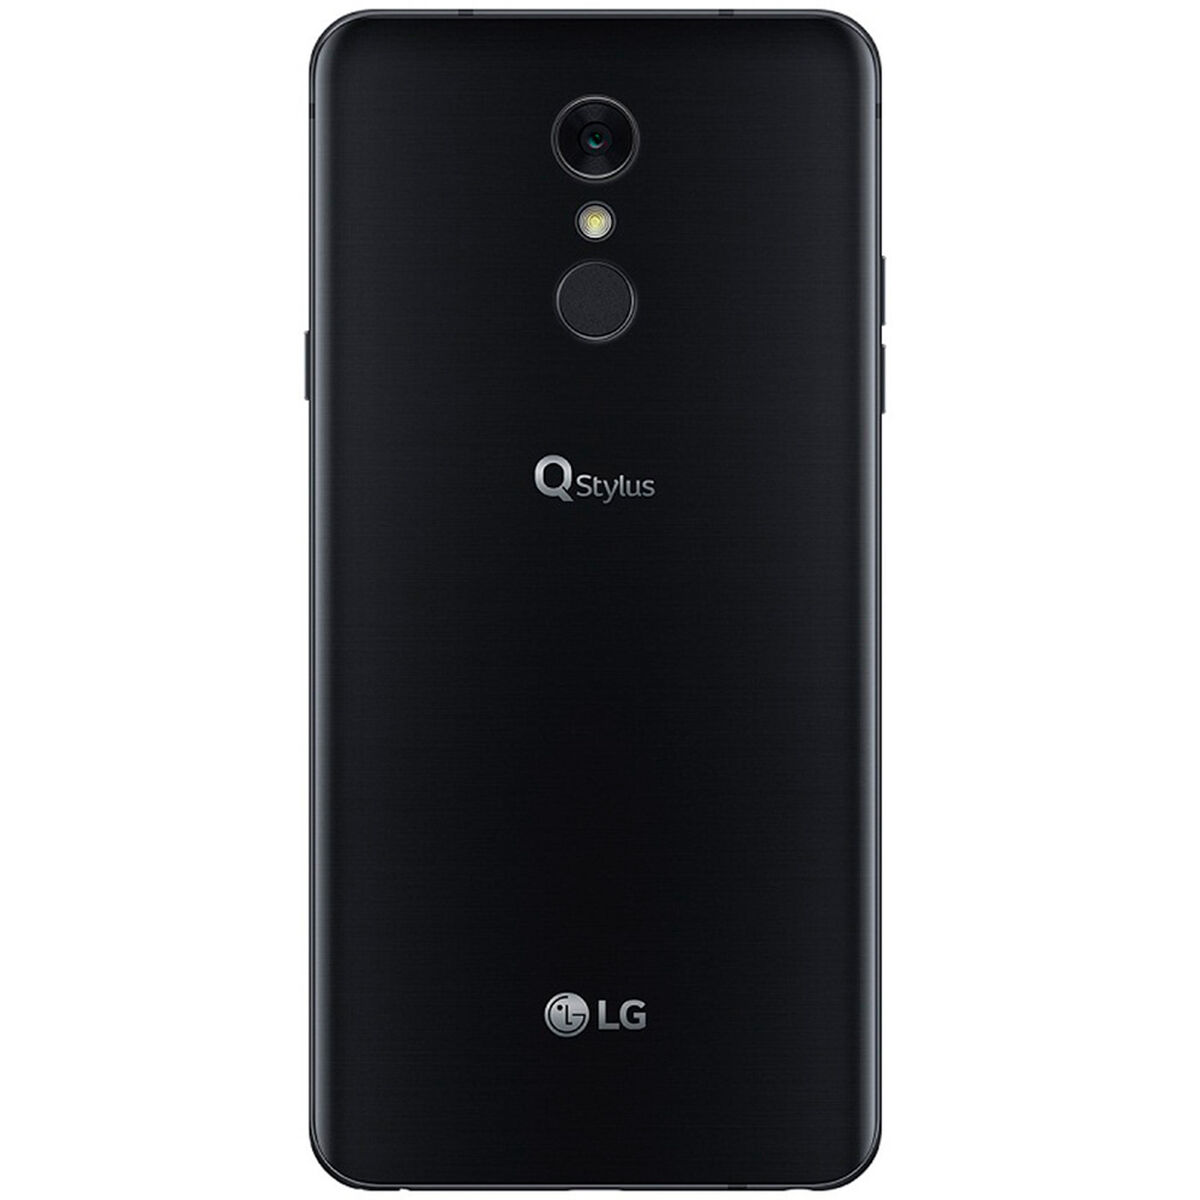 Celular LG QSTYLUS 6.2"